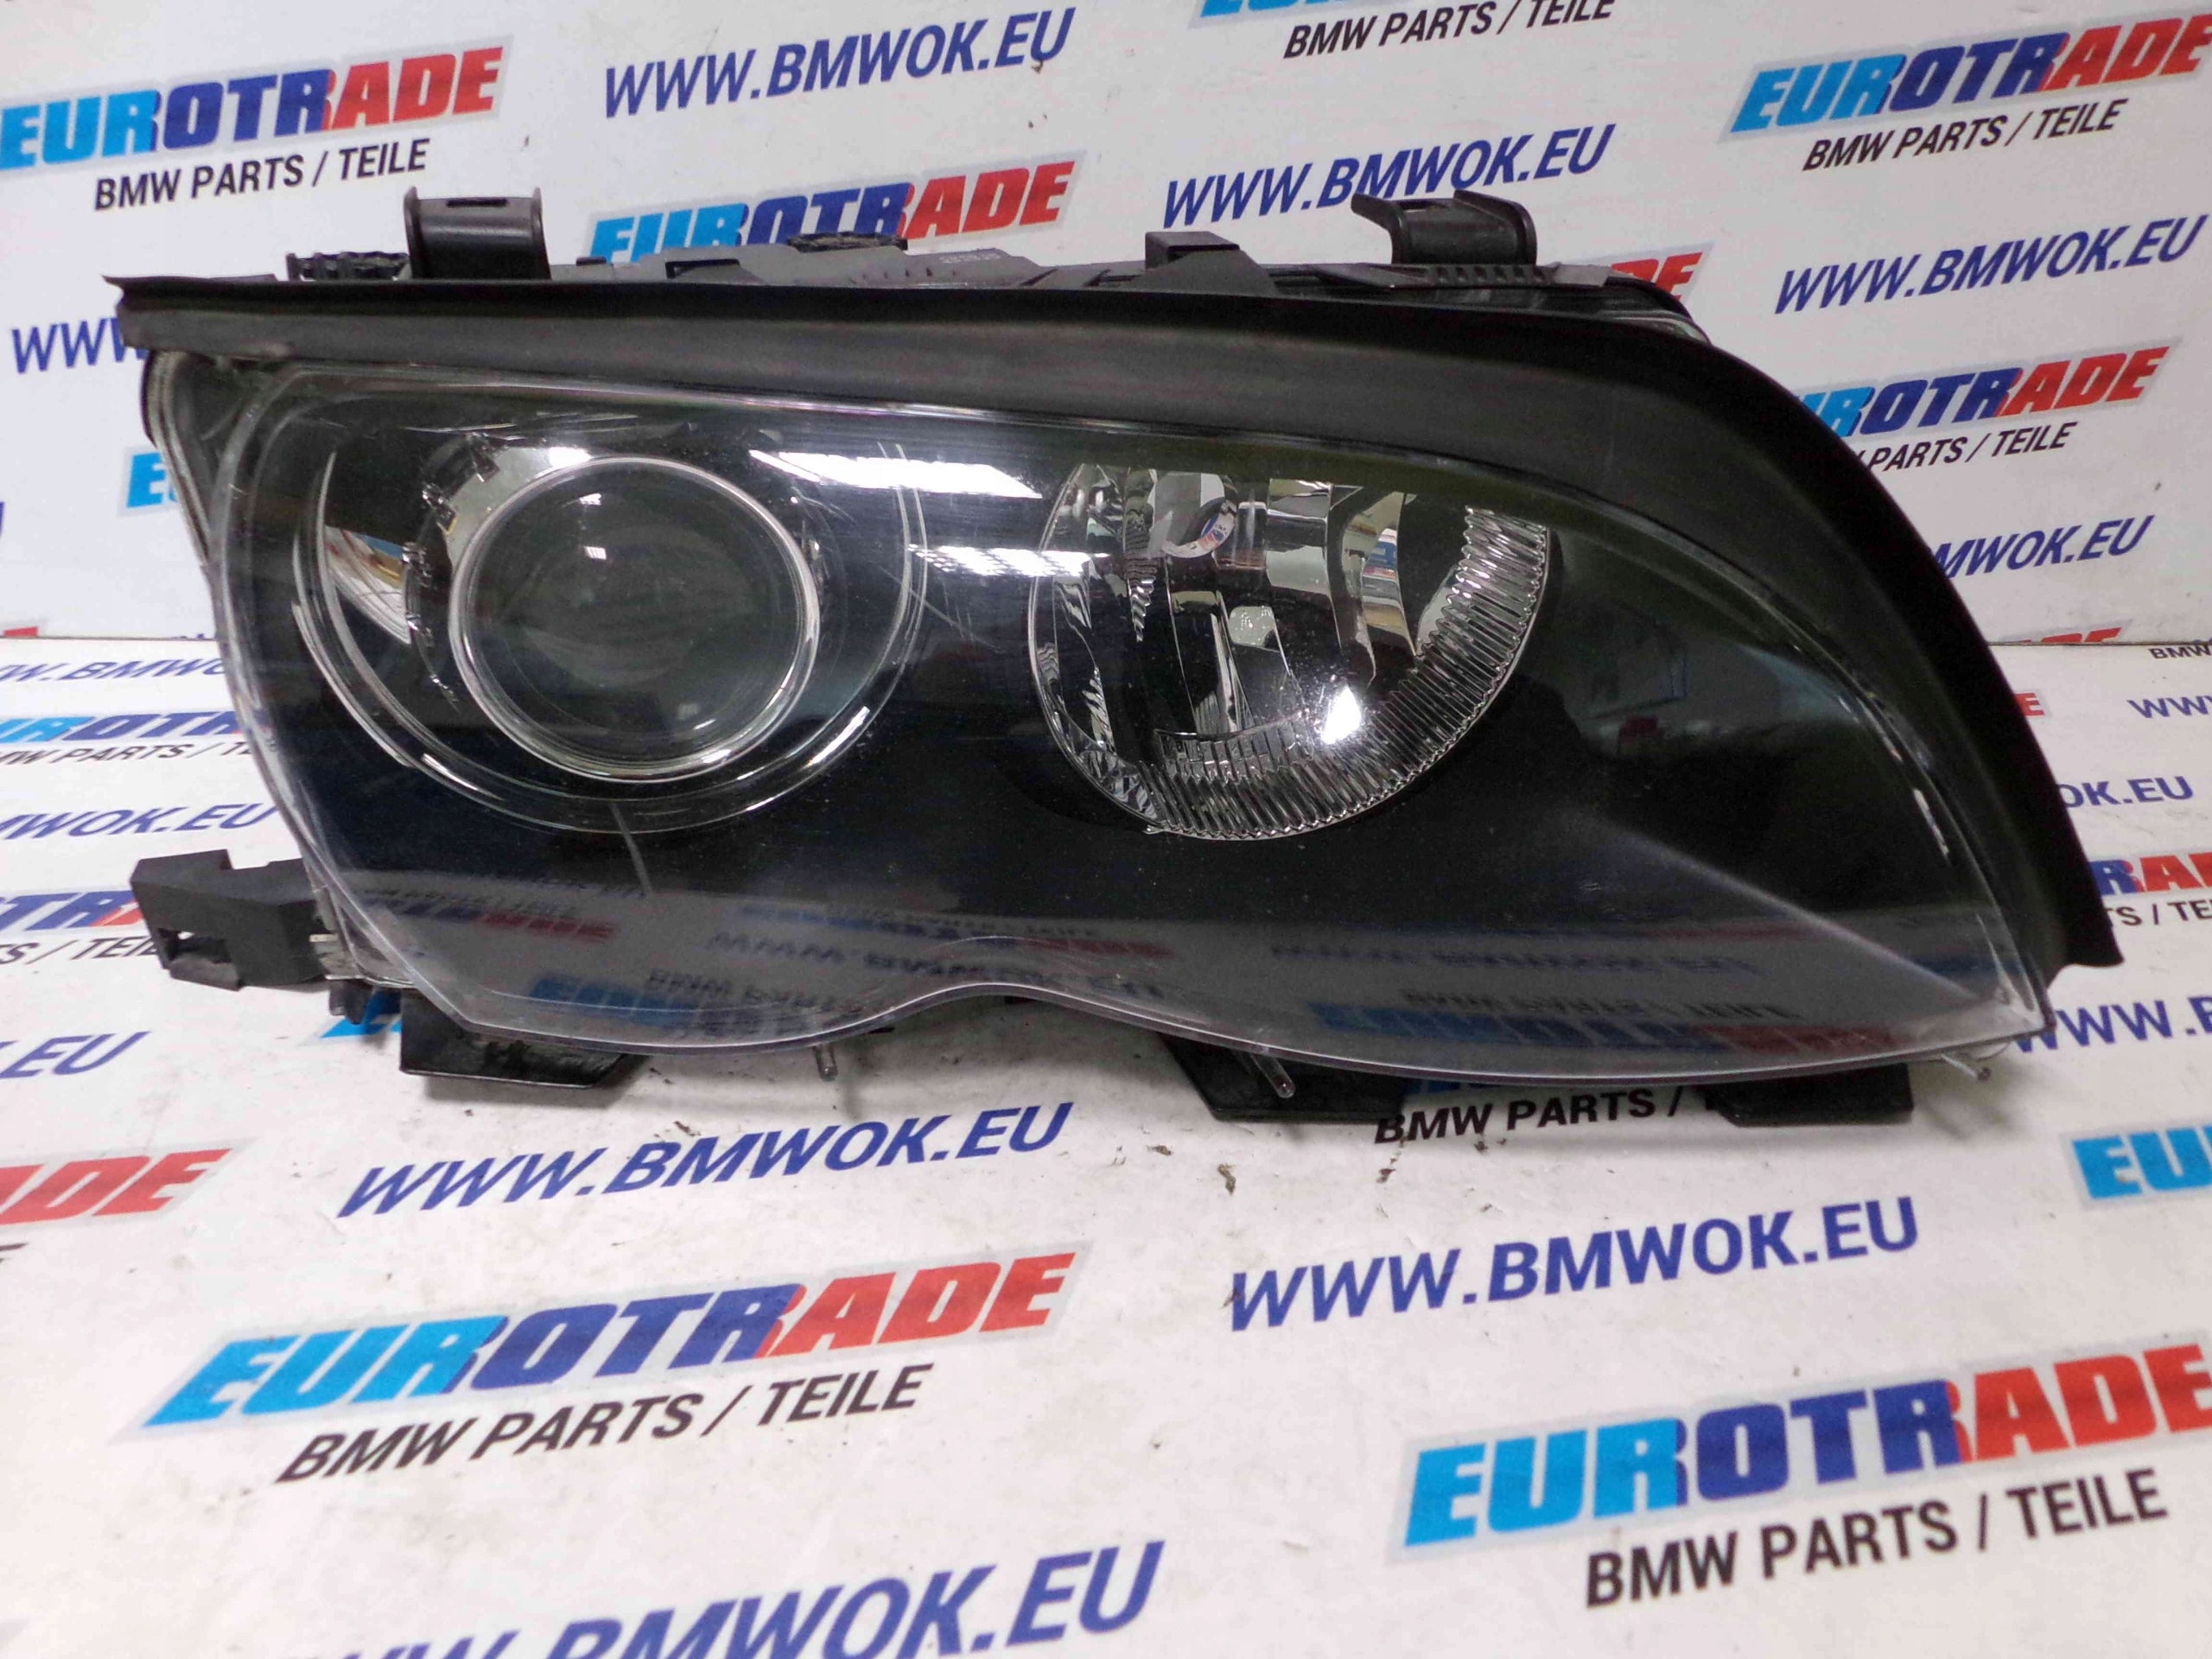 Frontscheinwerfer BMW E46 Xenon Rechts Original Scheinwerfer Headlight